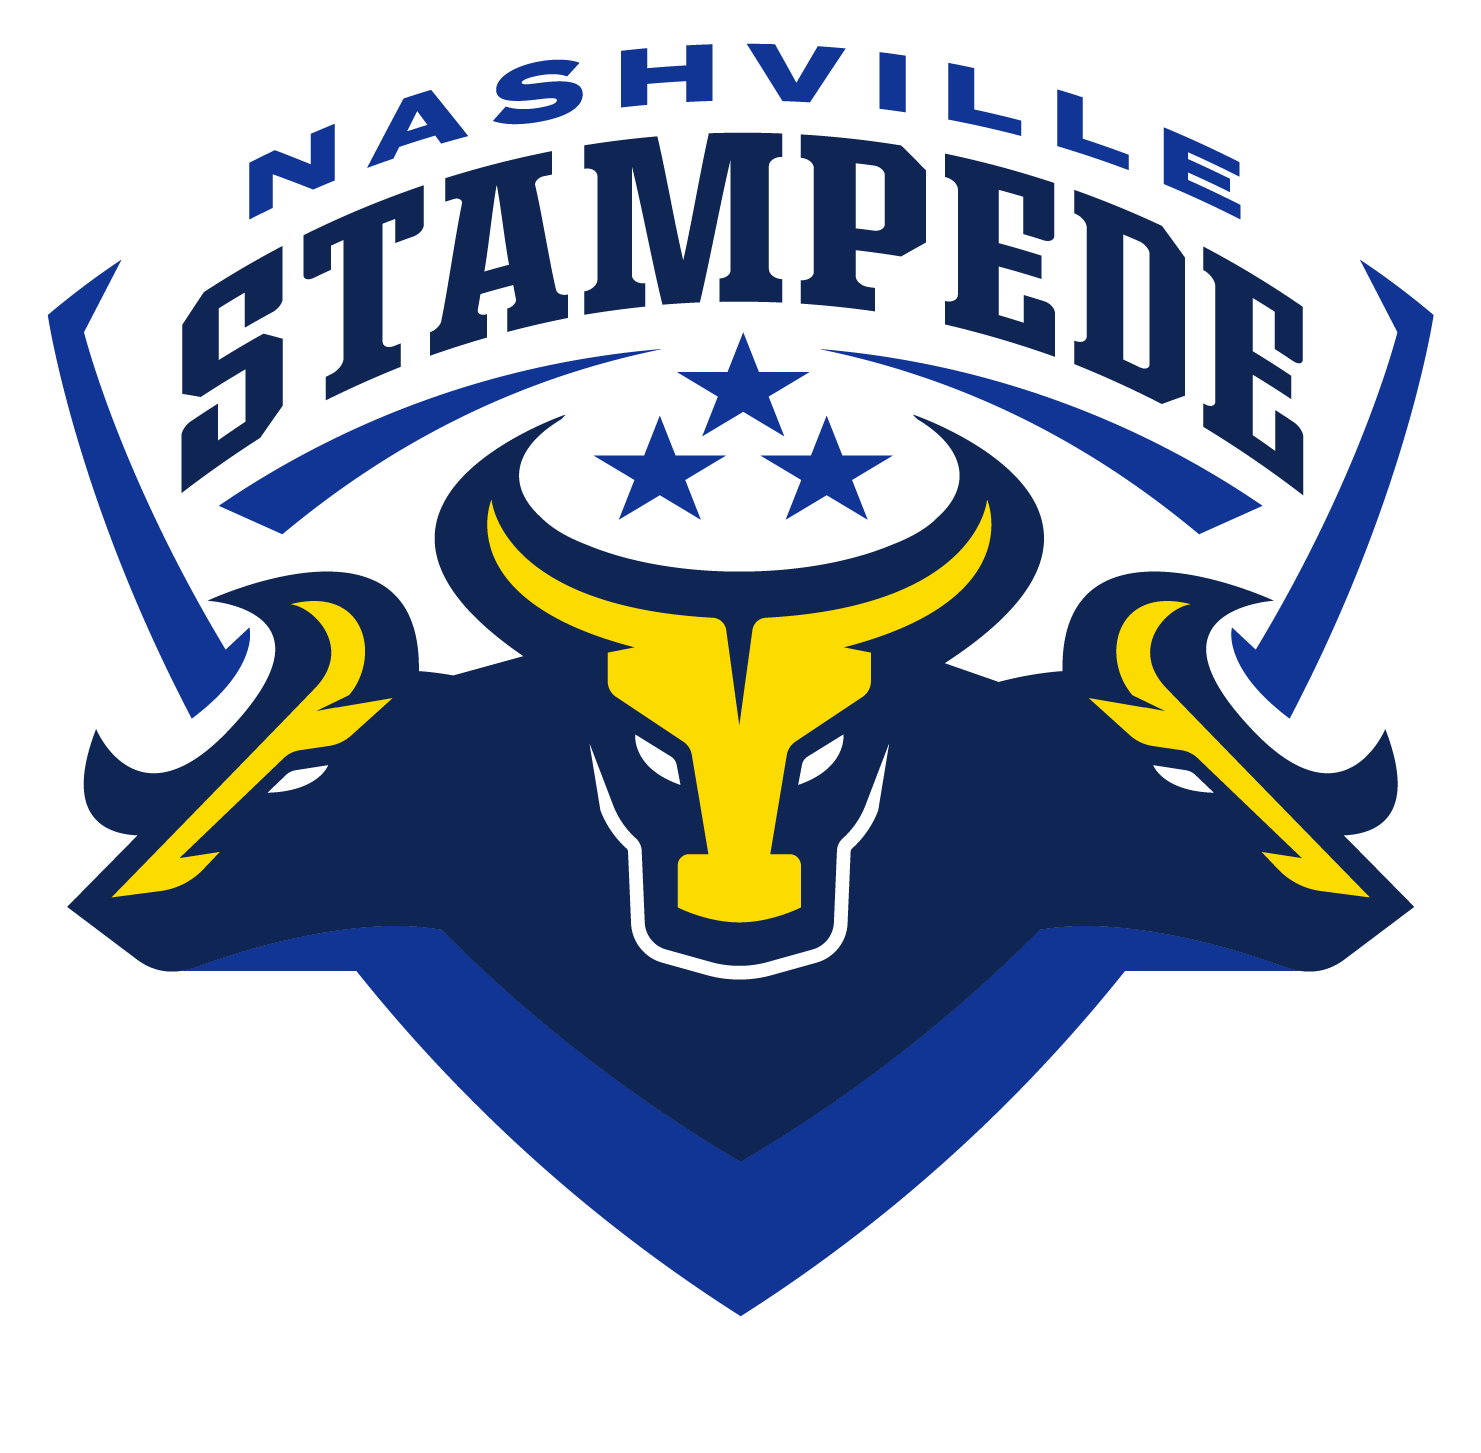 Nashville Stampede logo